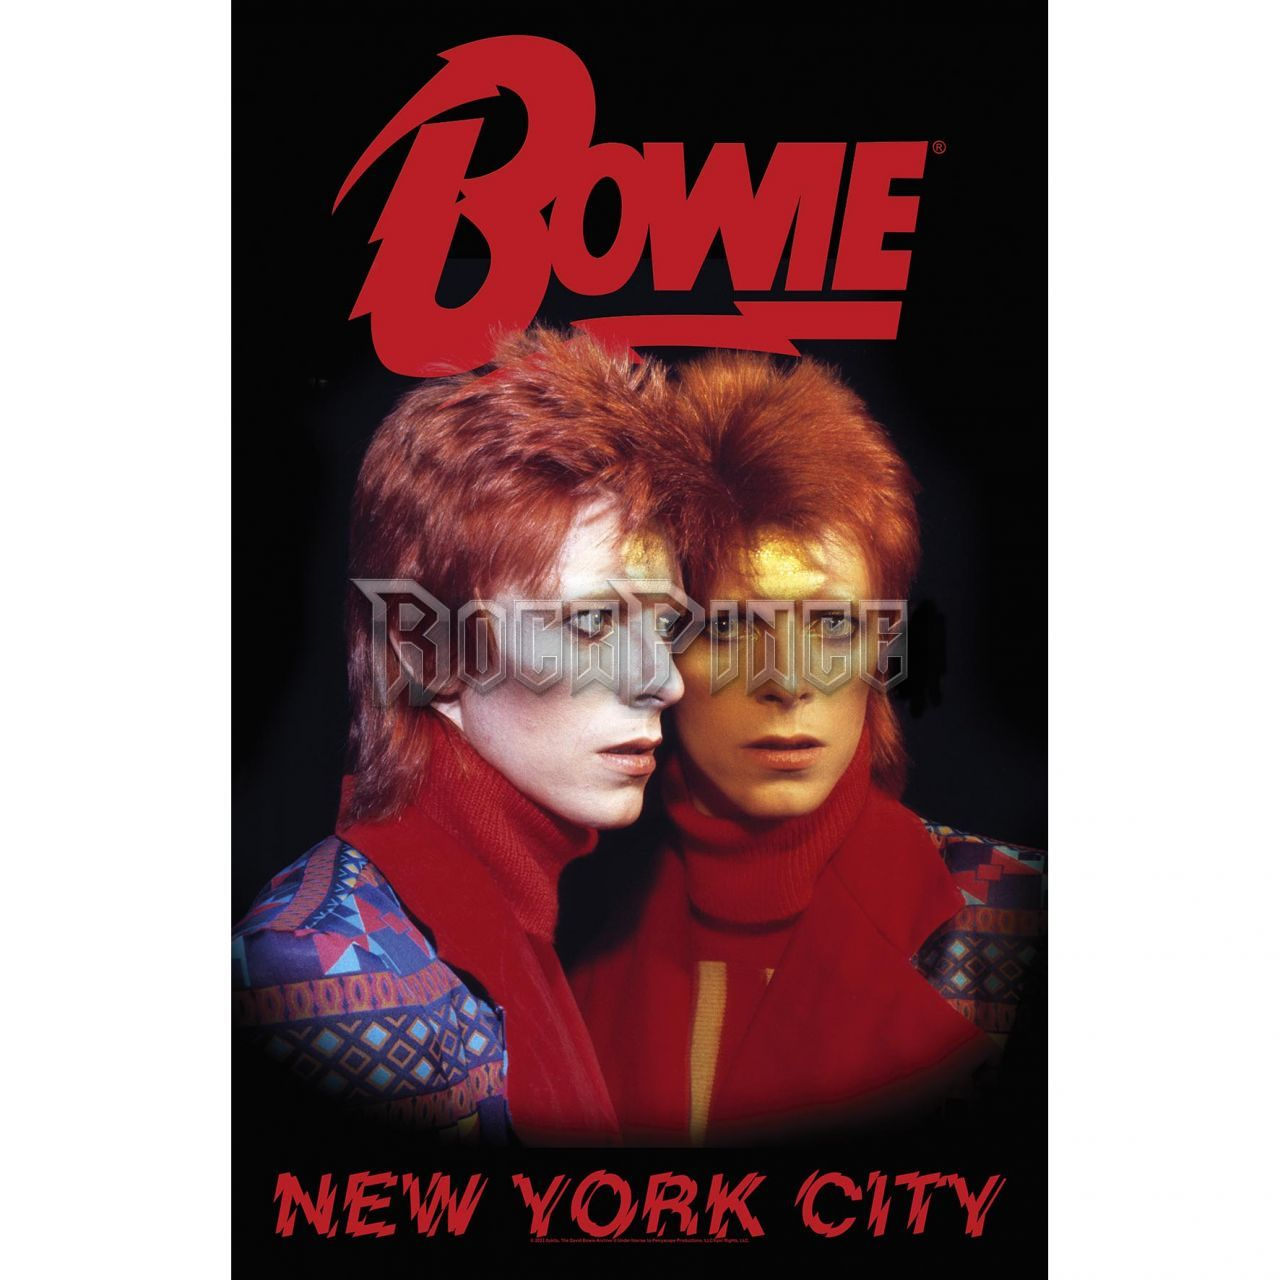 DAVID BOWIE - NEW YORK CITY - Textil poszter / Zászló - TP322